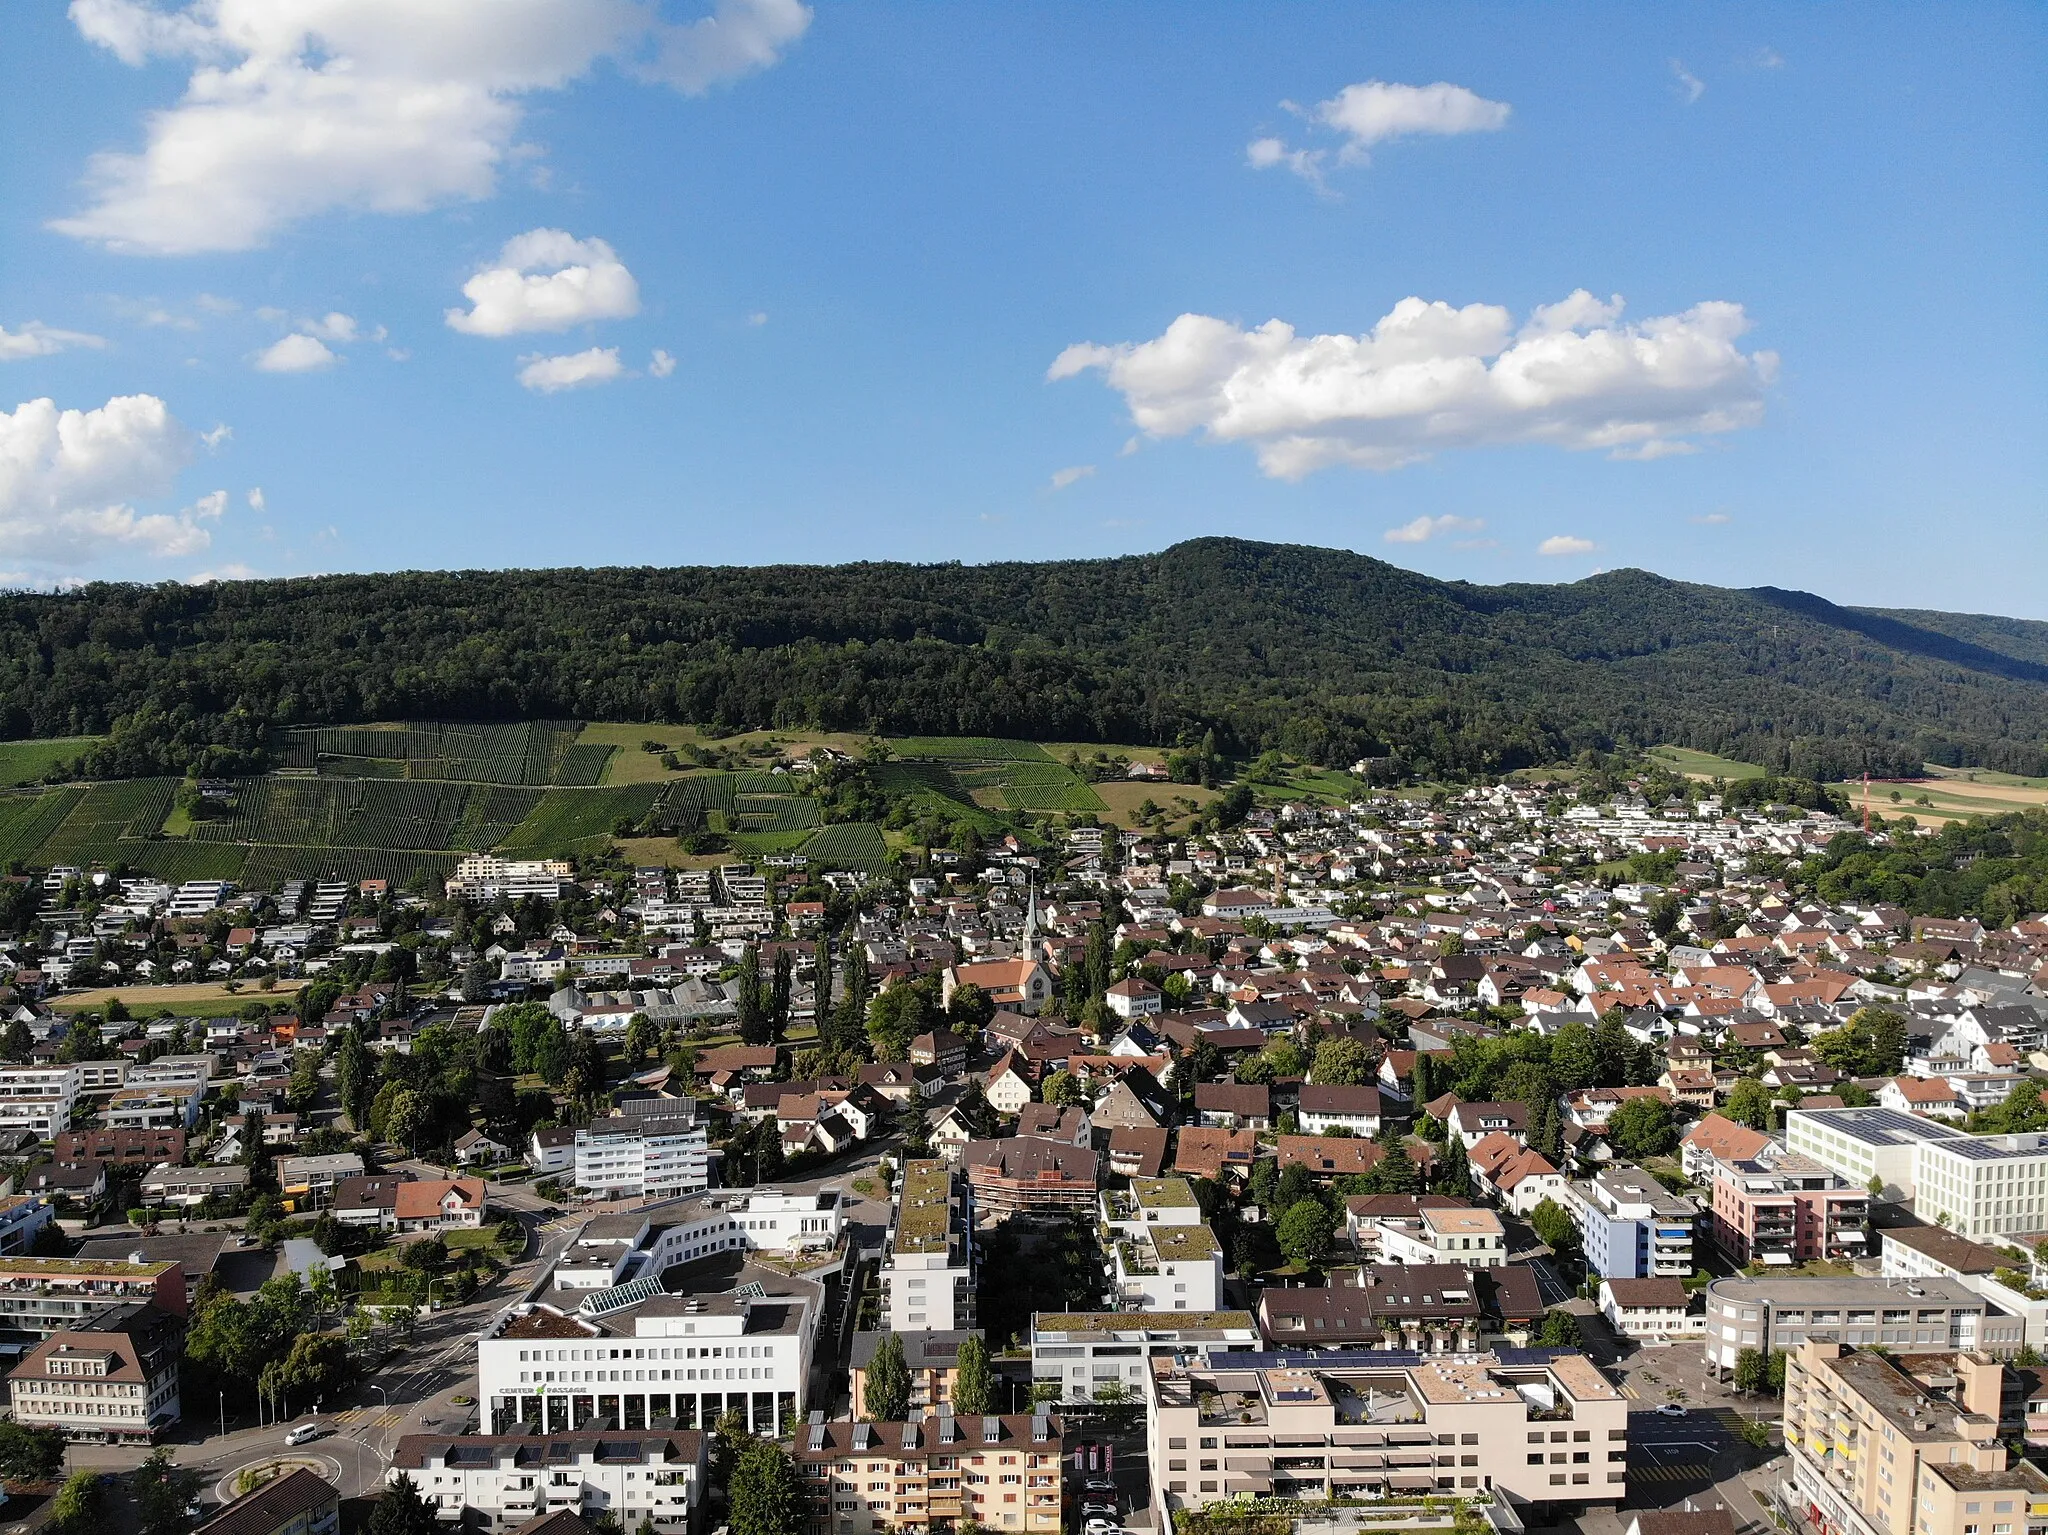 Image de Nord-ouest de la Suisse